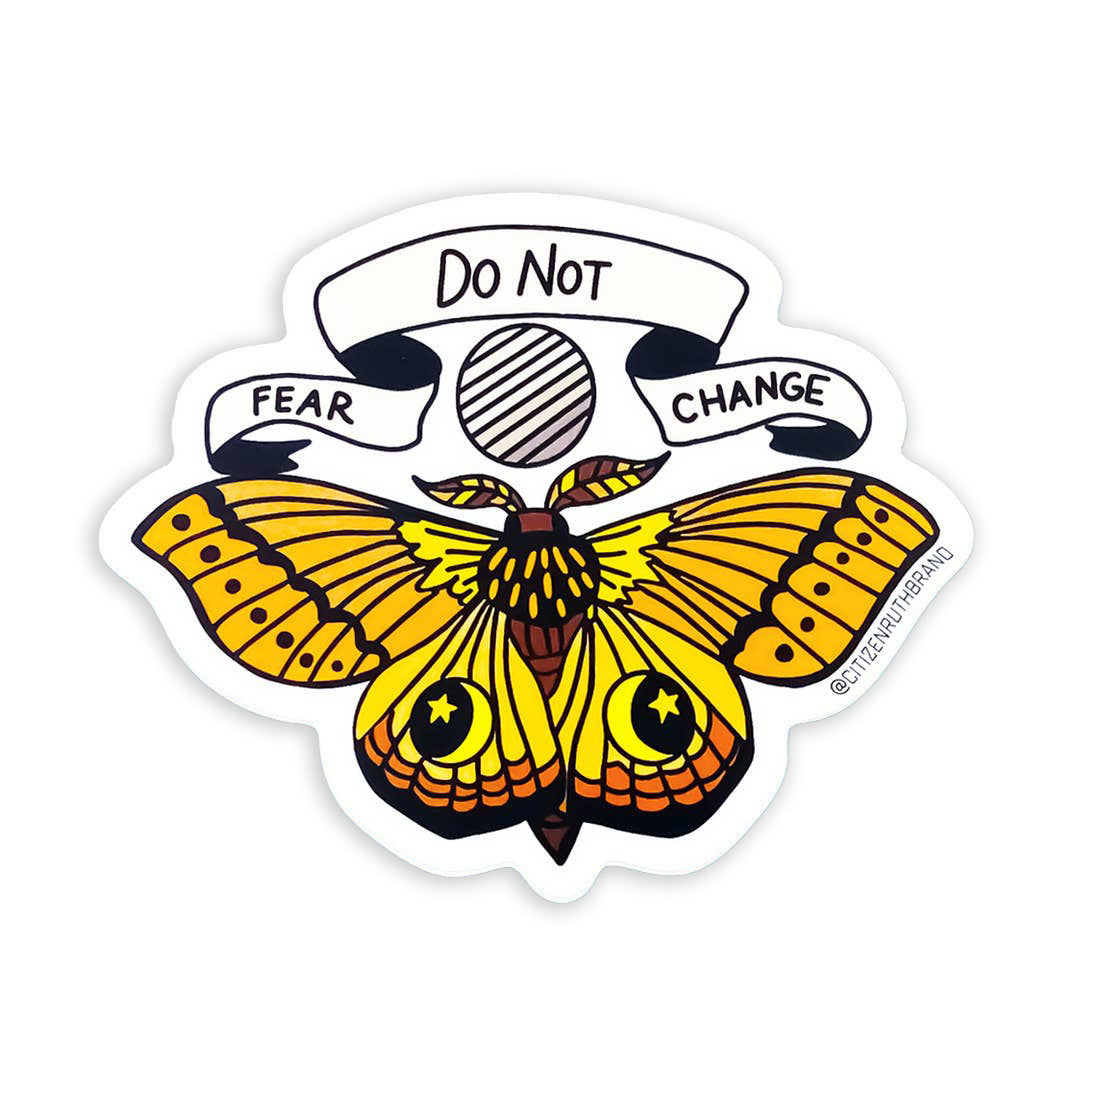 Do not fear change sticker